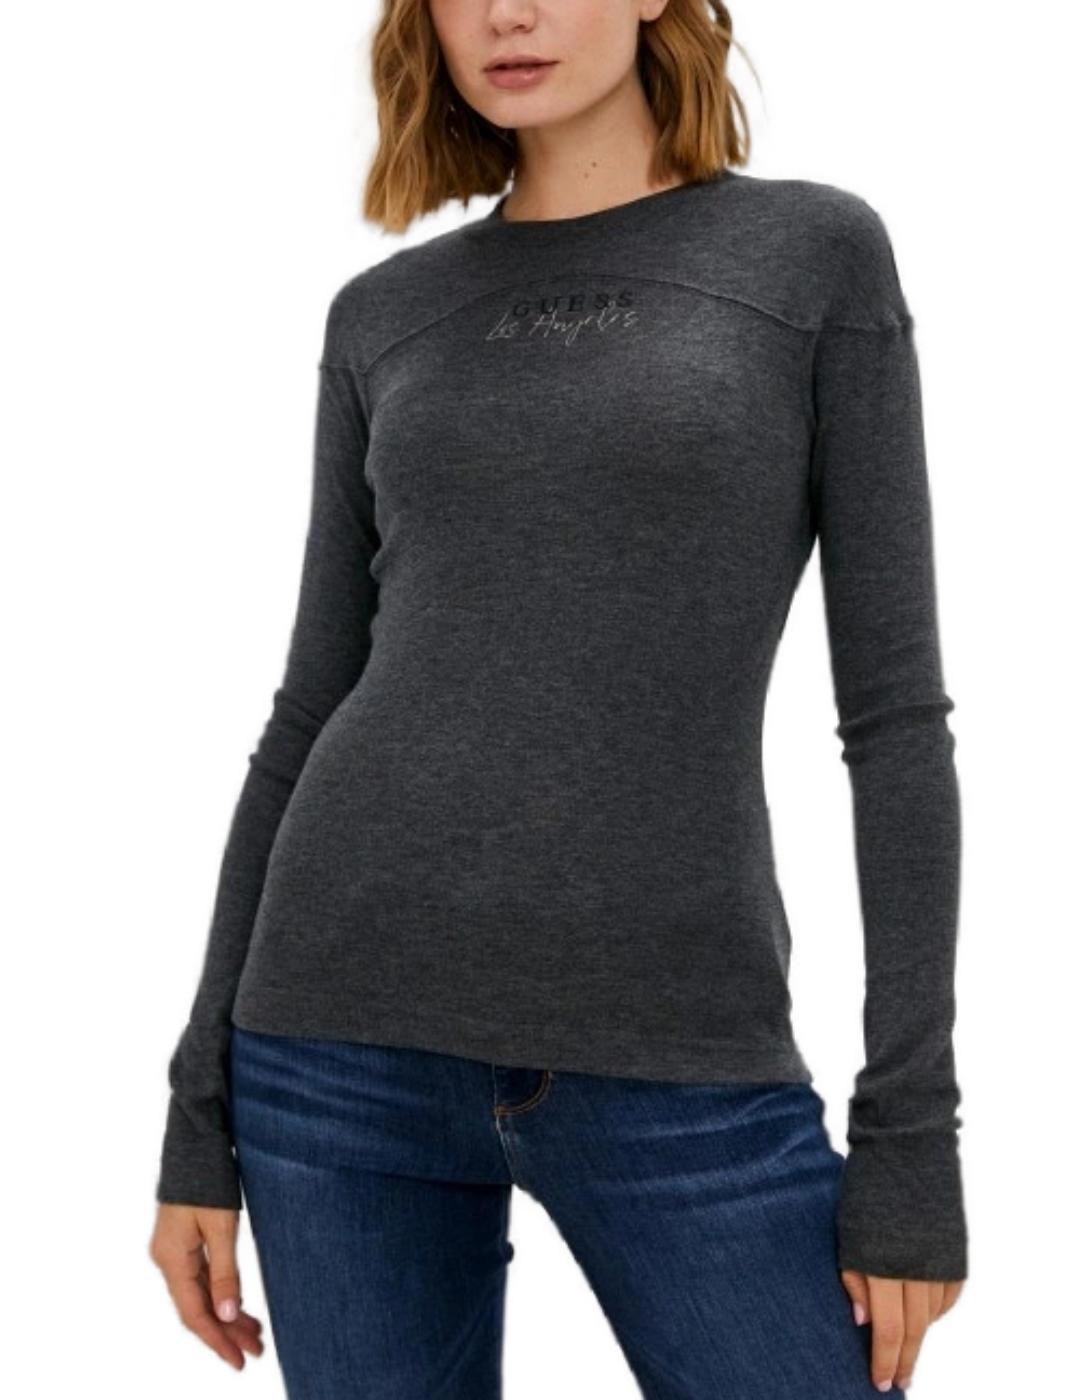 Camiseta Guess Janice lar gris oscuro para mujer-b